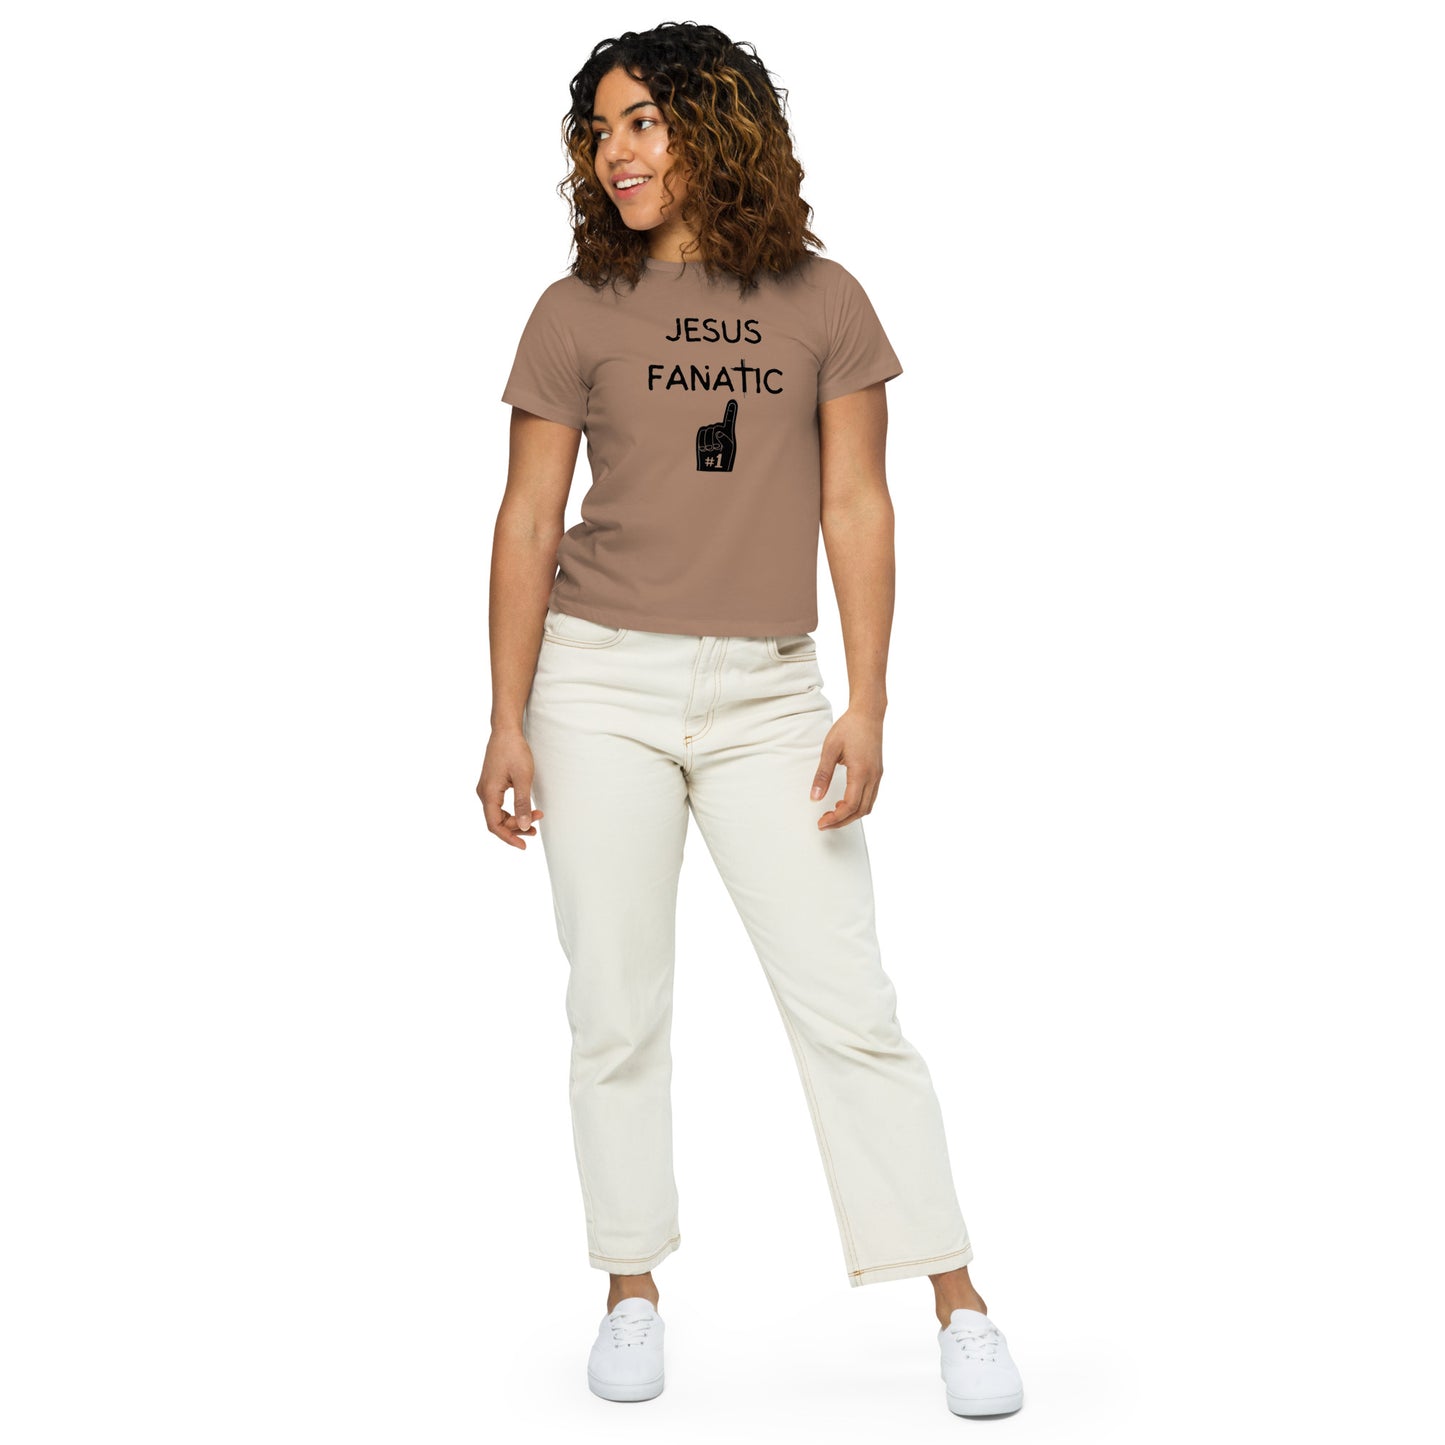 Women’s high-waisted t-shirt